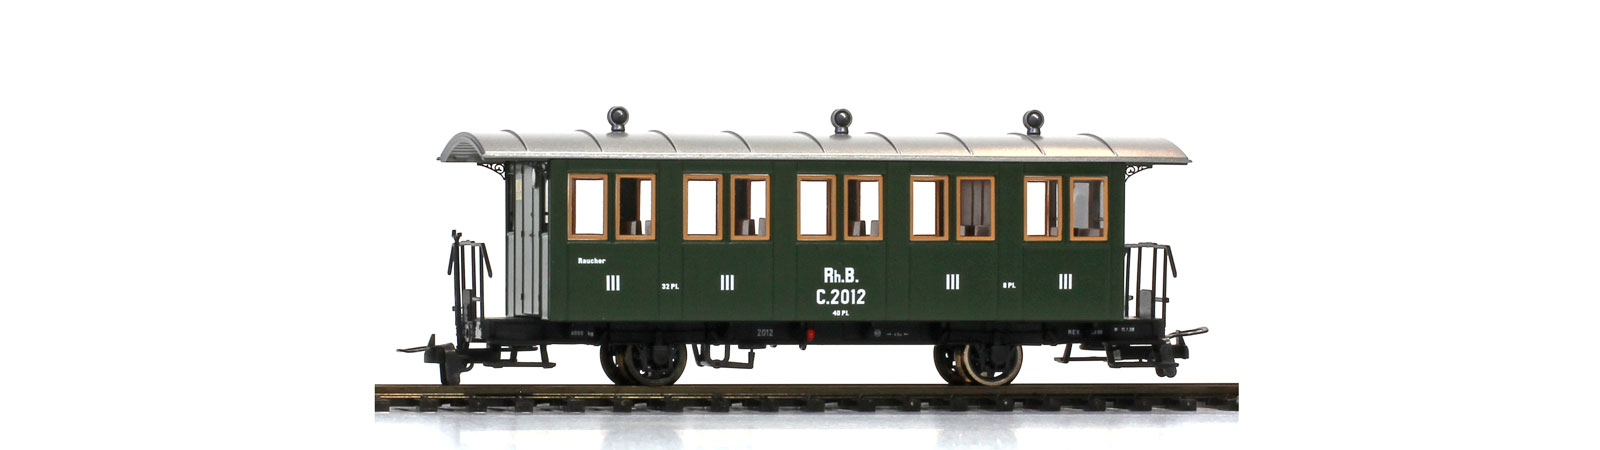 RhB 2achs PersonenW C2012 Ep6 grün, aktueller Zustand als Dampfzug Nostalgiewagen, ex LD